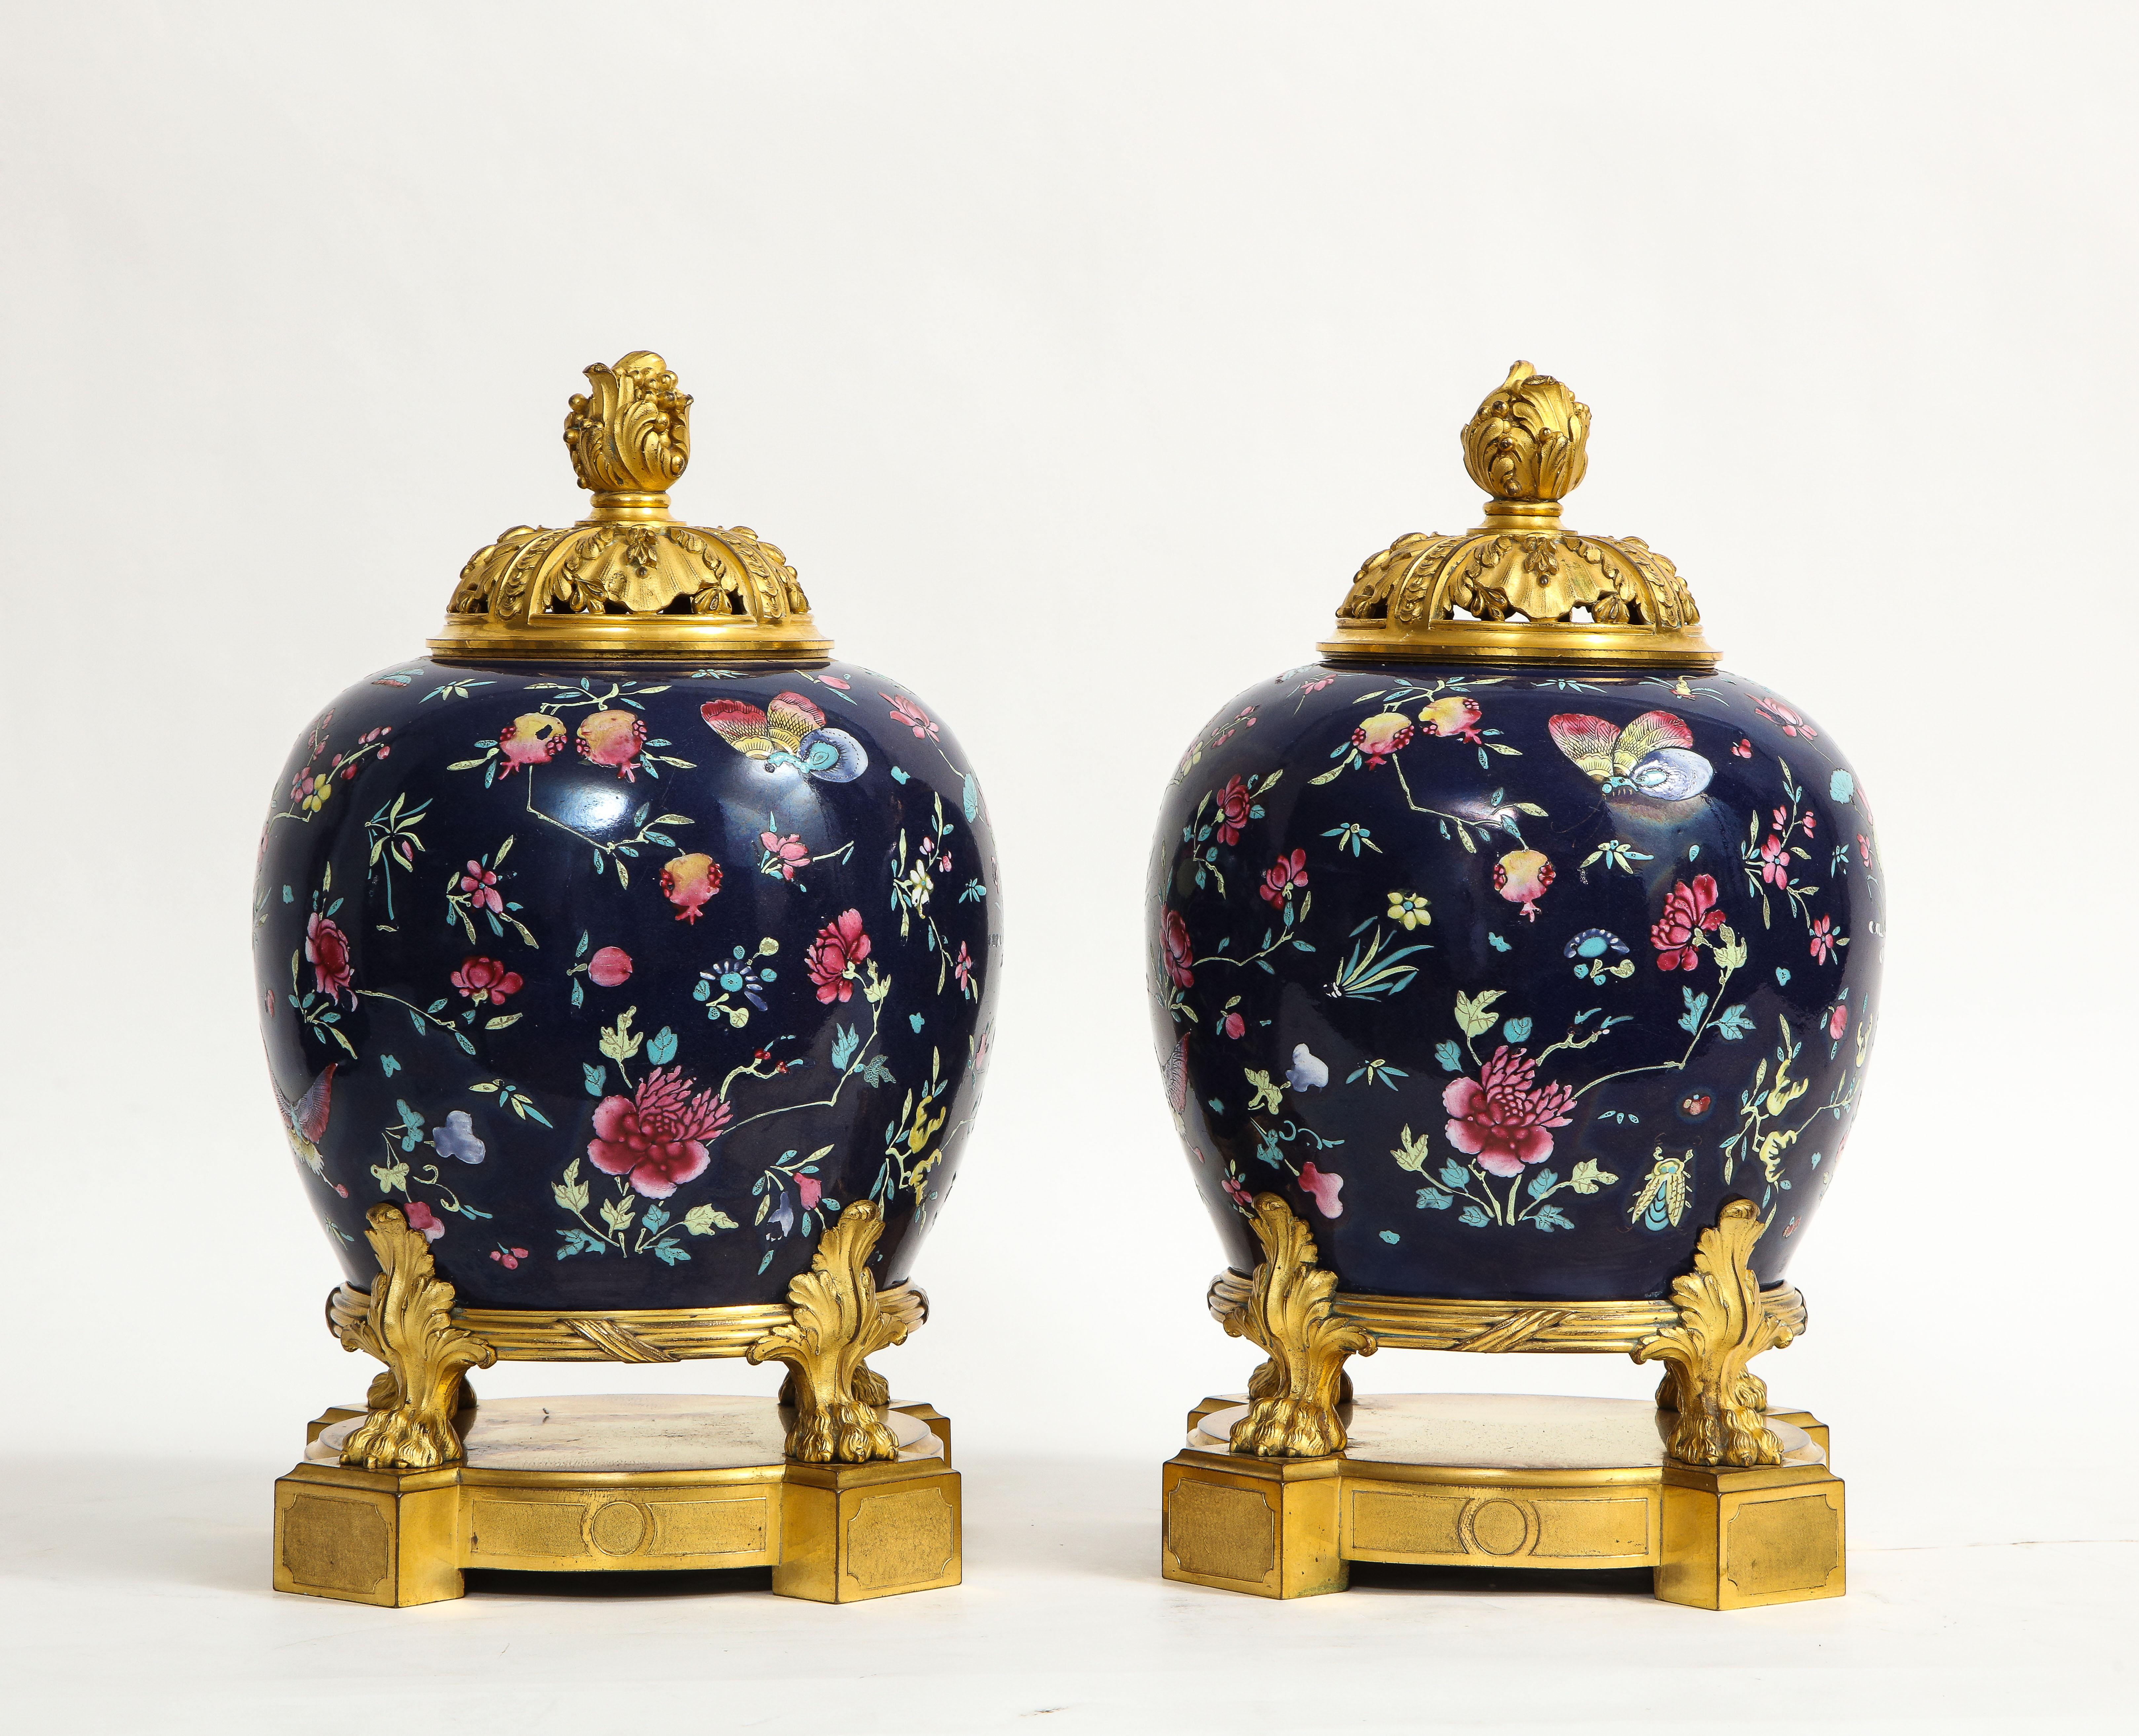 Fantastique paire de pots-pourris en porcelaine chinoise de la famille rose, montés en bronze doré, de style Louis XVI, du 19e siècle. Chaque corps en porcelaine de fond bleu foncé est magnifiquement émaillé à la main de magnifiques motifs de la